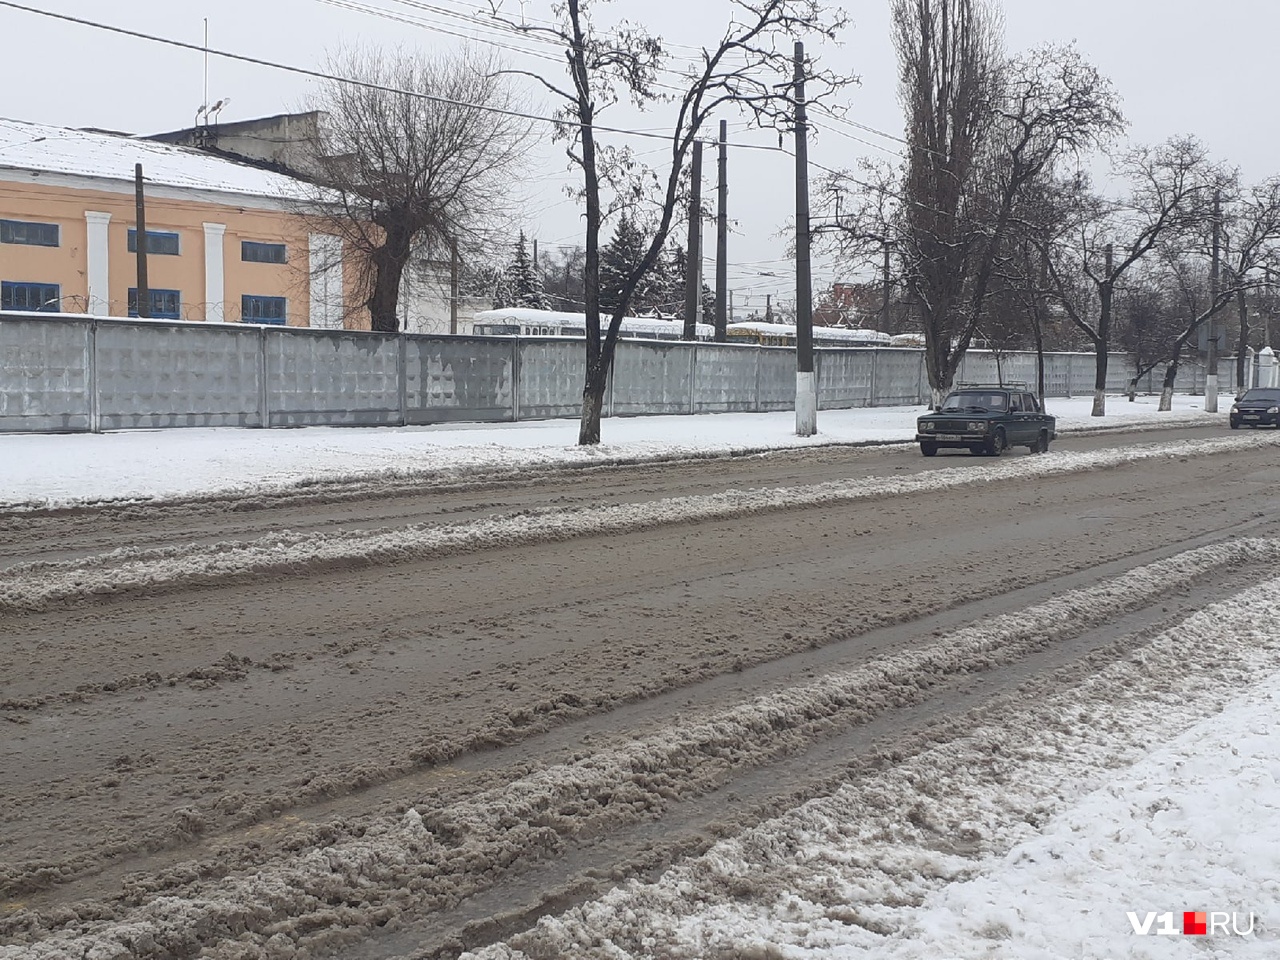 Работали всю ночь: мэрия Волгограда отчиталась об уборке городских улиц